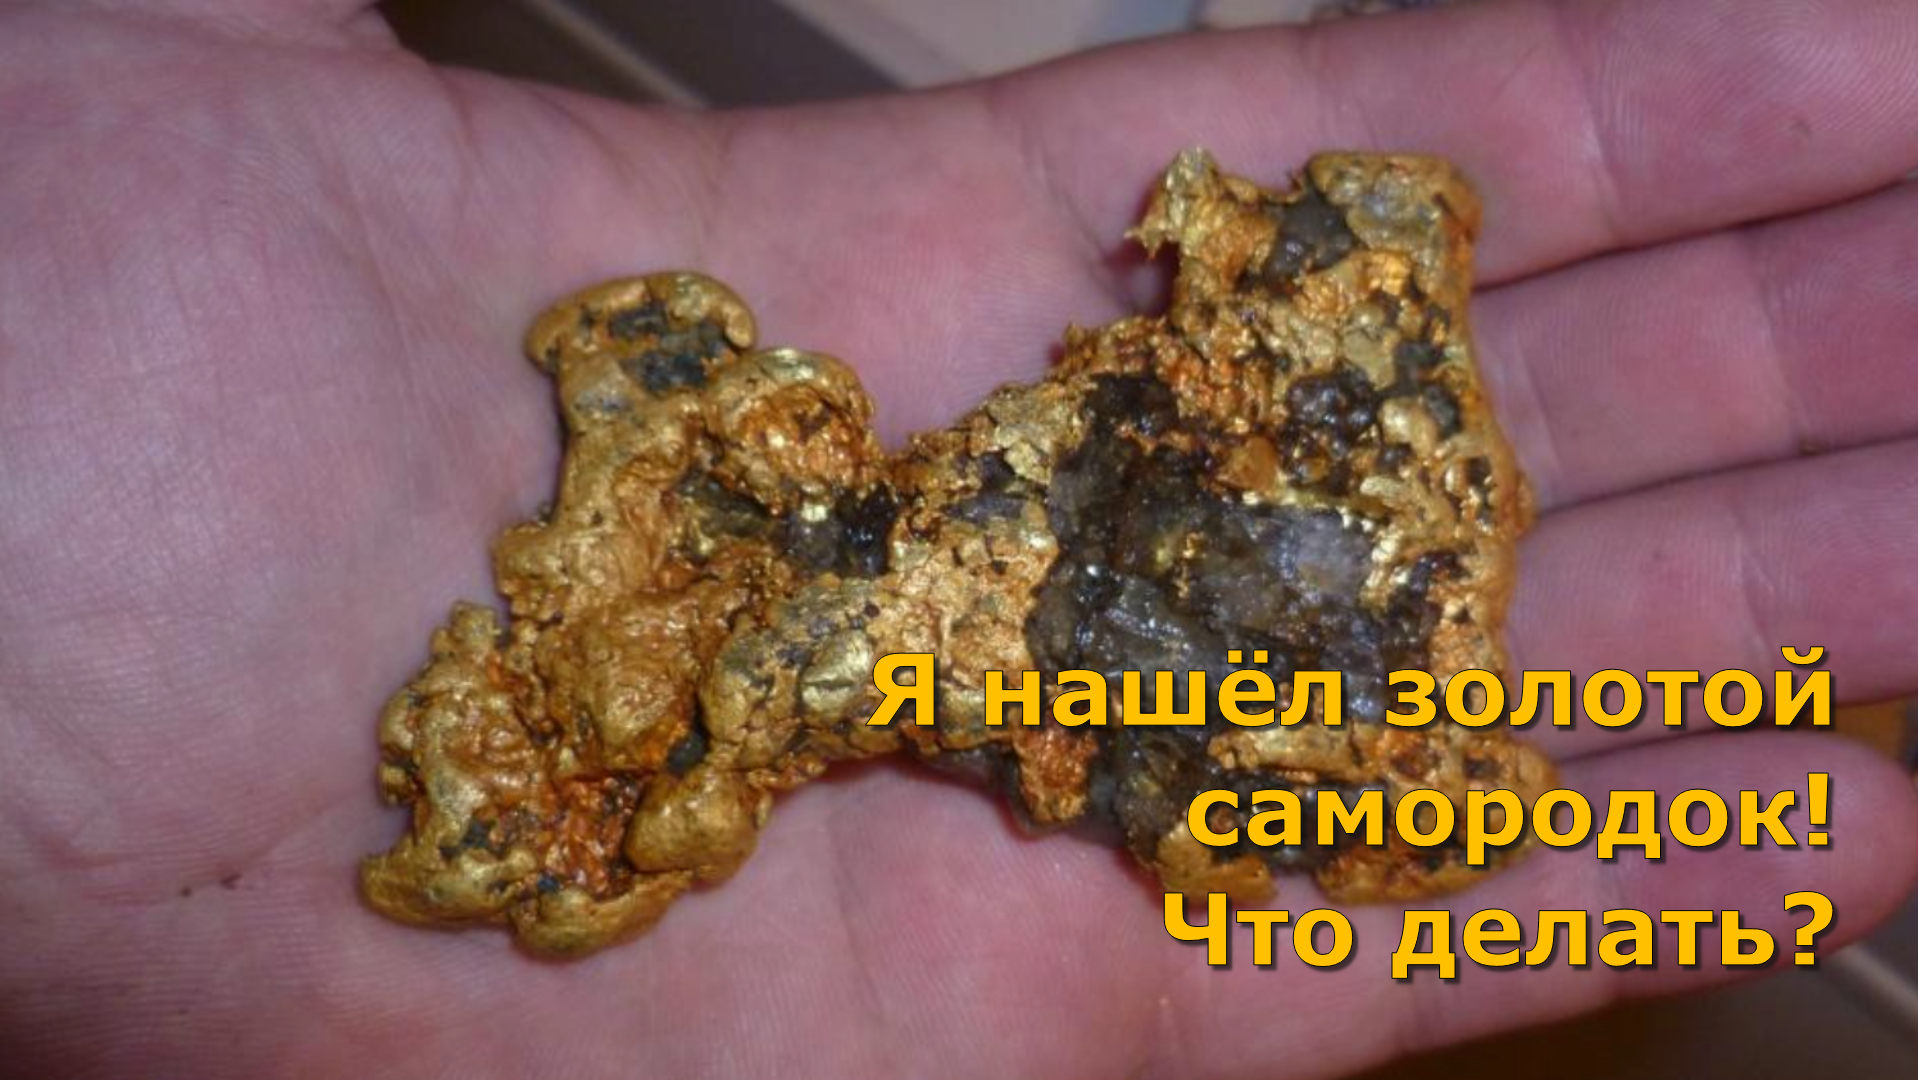 Самородное золото. Найденные золотые самородки. Нашел самородок золота. Кусок золота.